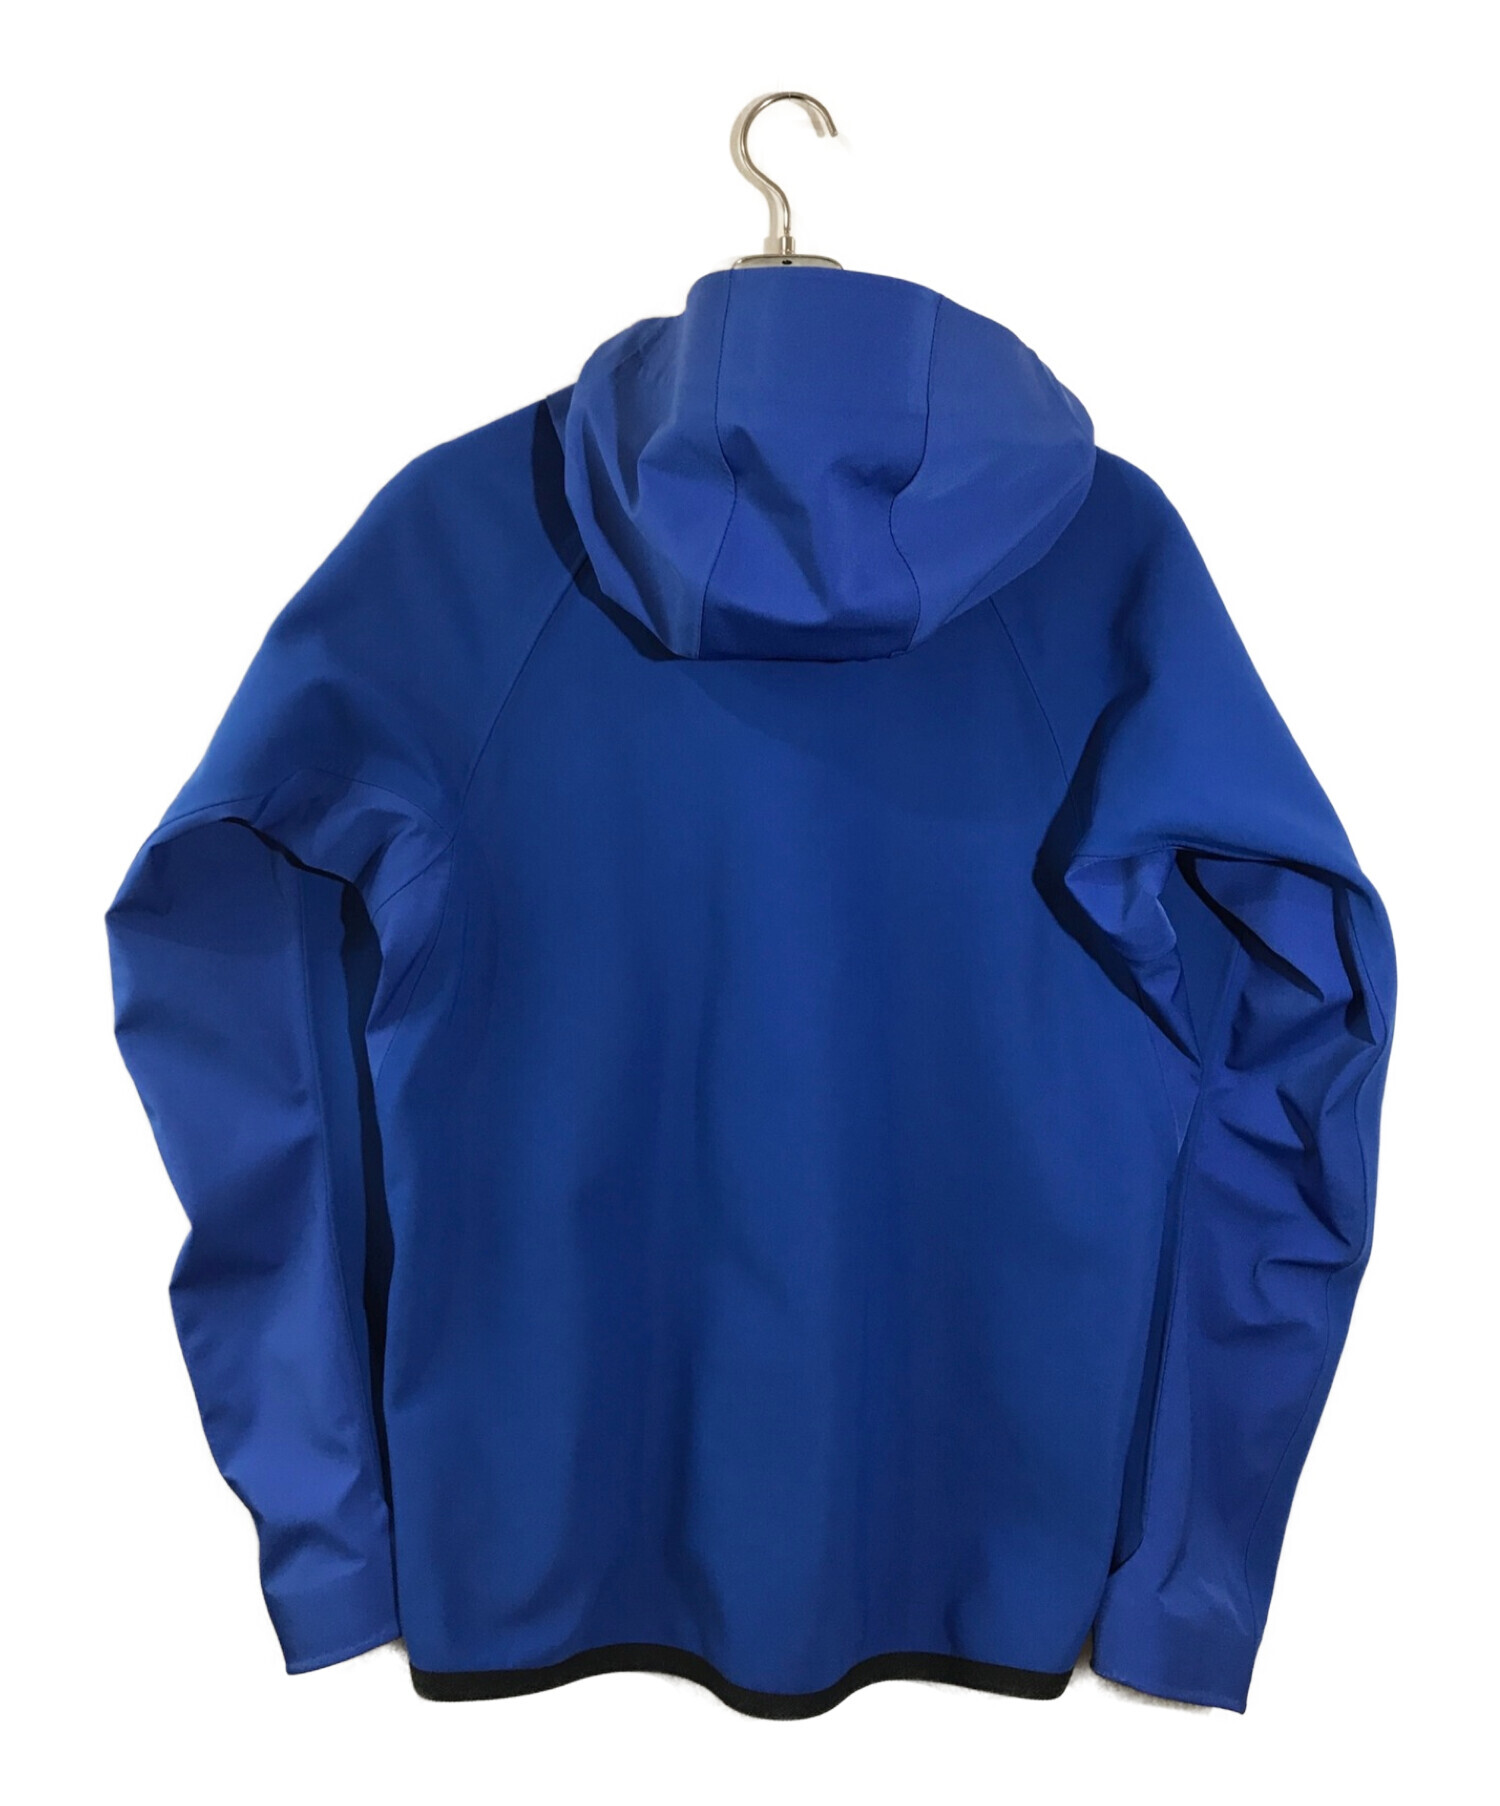 MONCLER GRENOBLE (モンクレール グルノーブル) マウンテンパーカー ジャケット ブルー サイズ:M